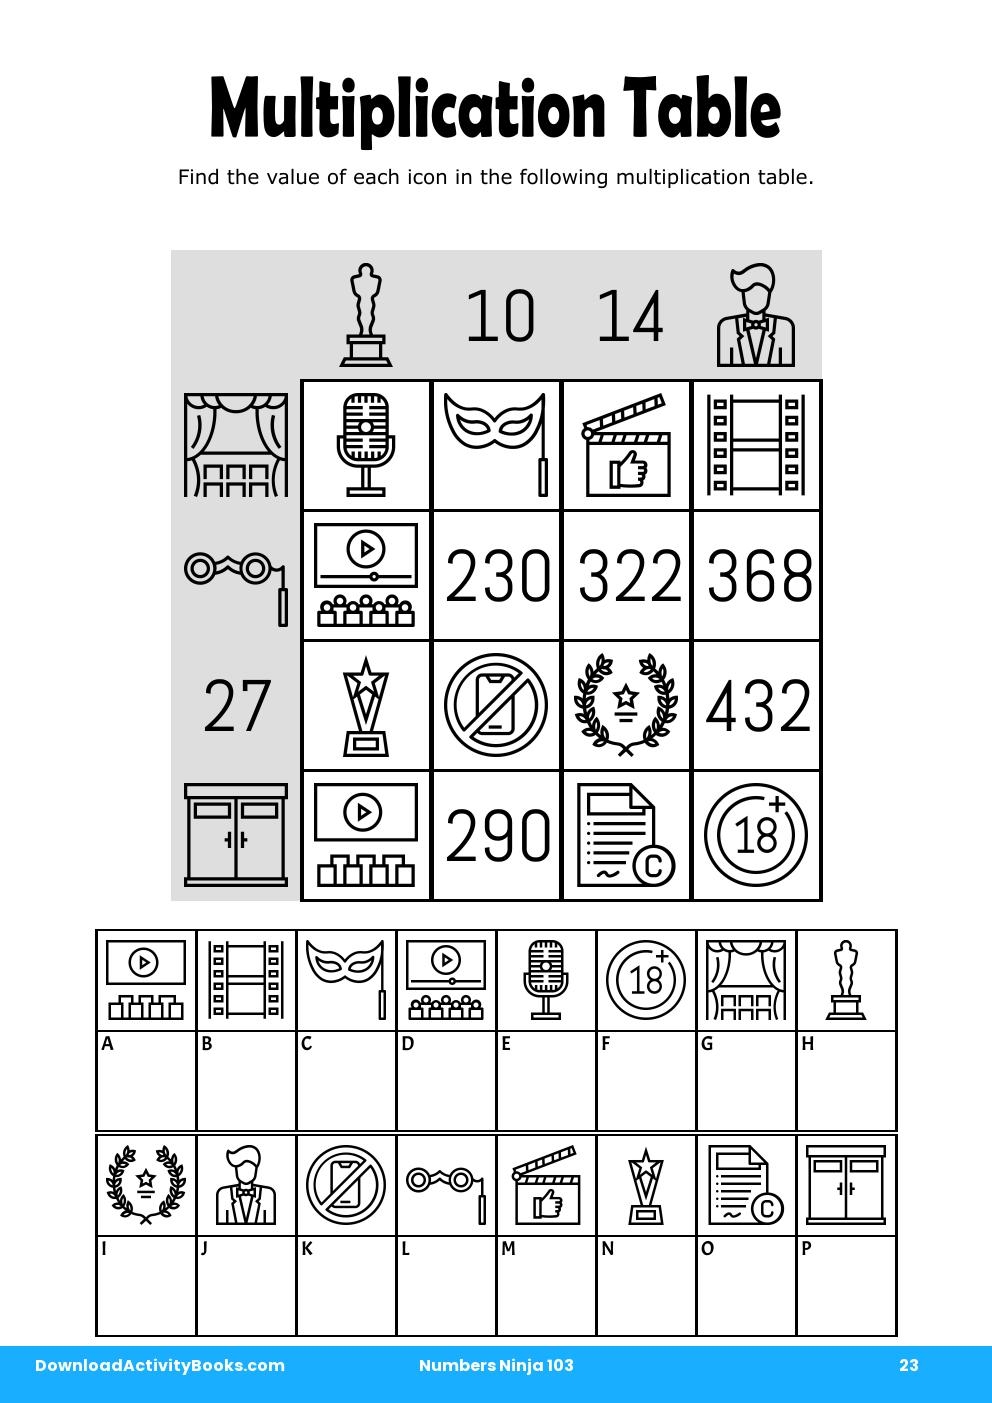 Multiplication Table in Numbers Ninja 103